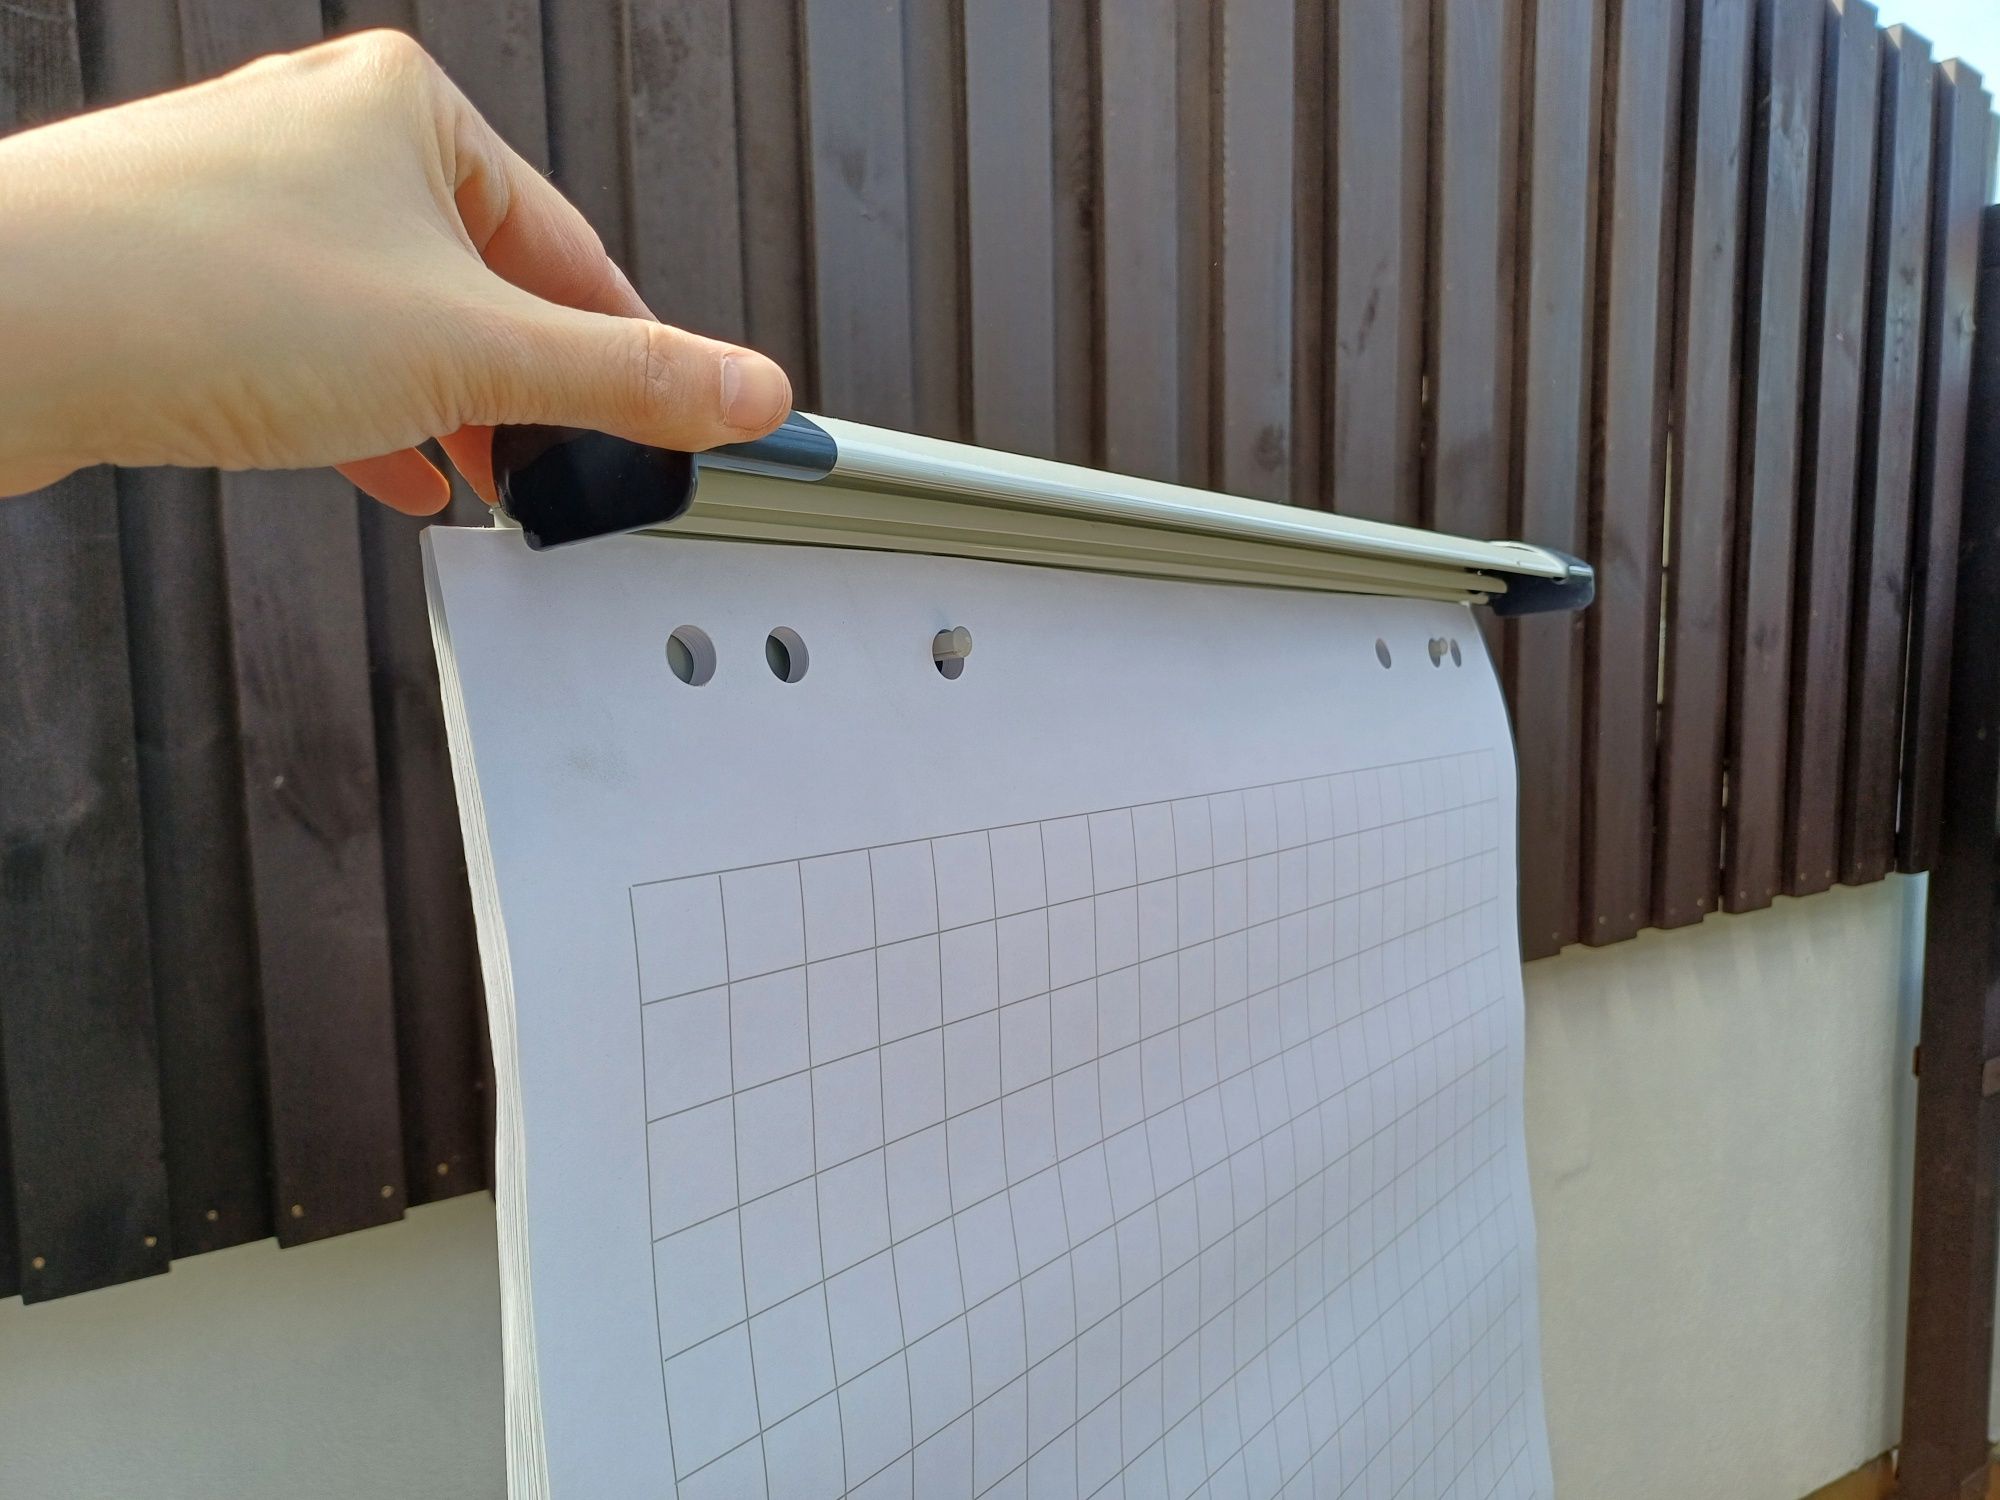 Flipchart, tablica stojąca suchościeralna, magnetyczna 60x90 cm